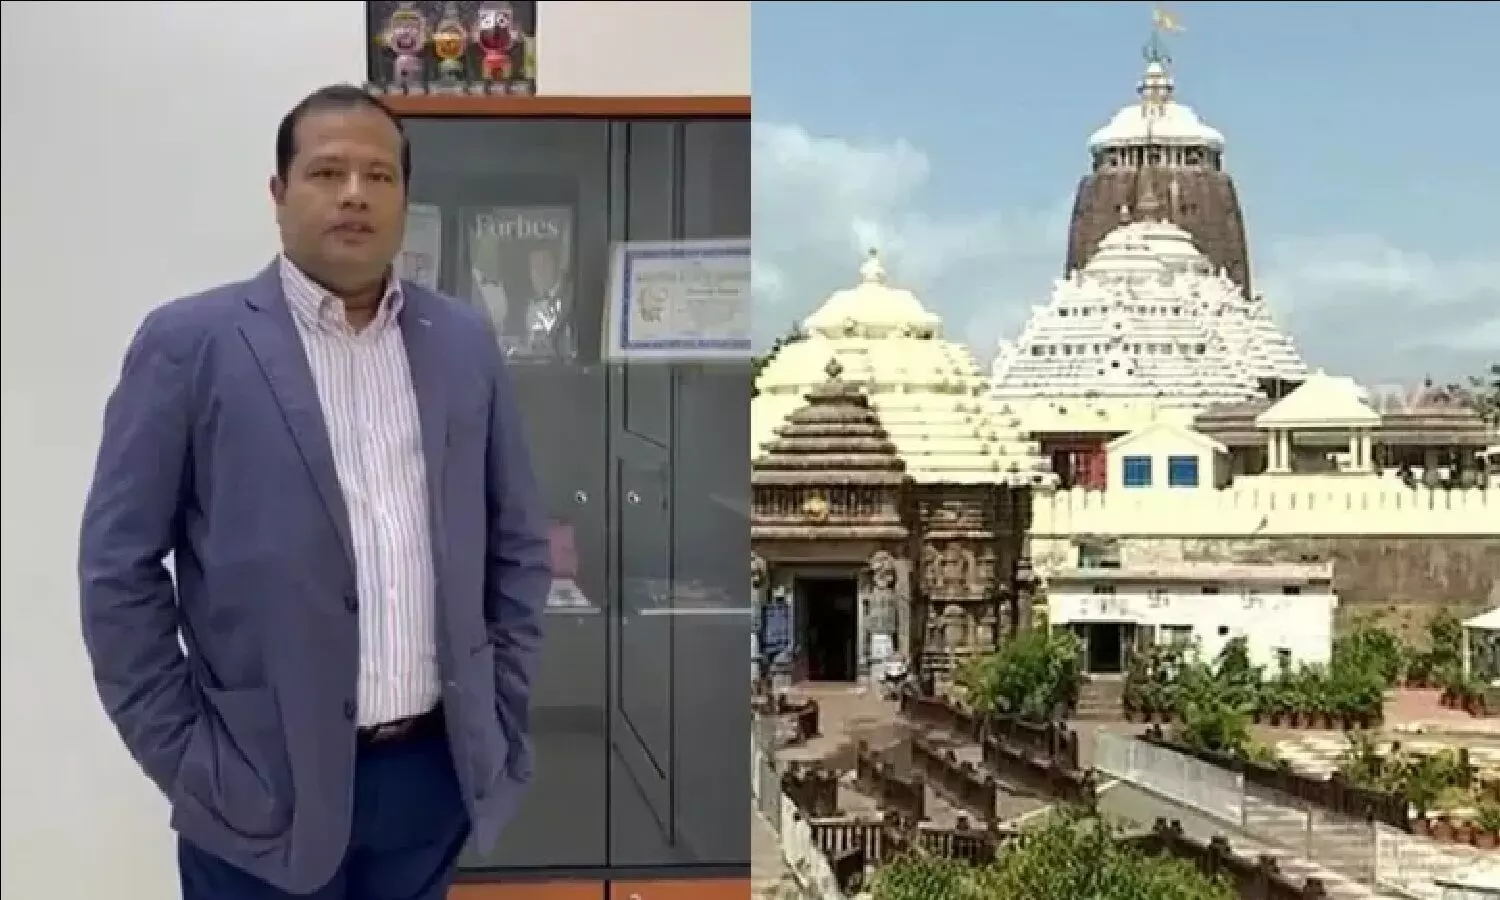 बिश्वनाथ पटनायक कौन हैं, जो लंदन में जगन्नाथ मंदिर बनाने के लिए 250 करोड़ रुपए का दान दे रहे